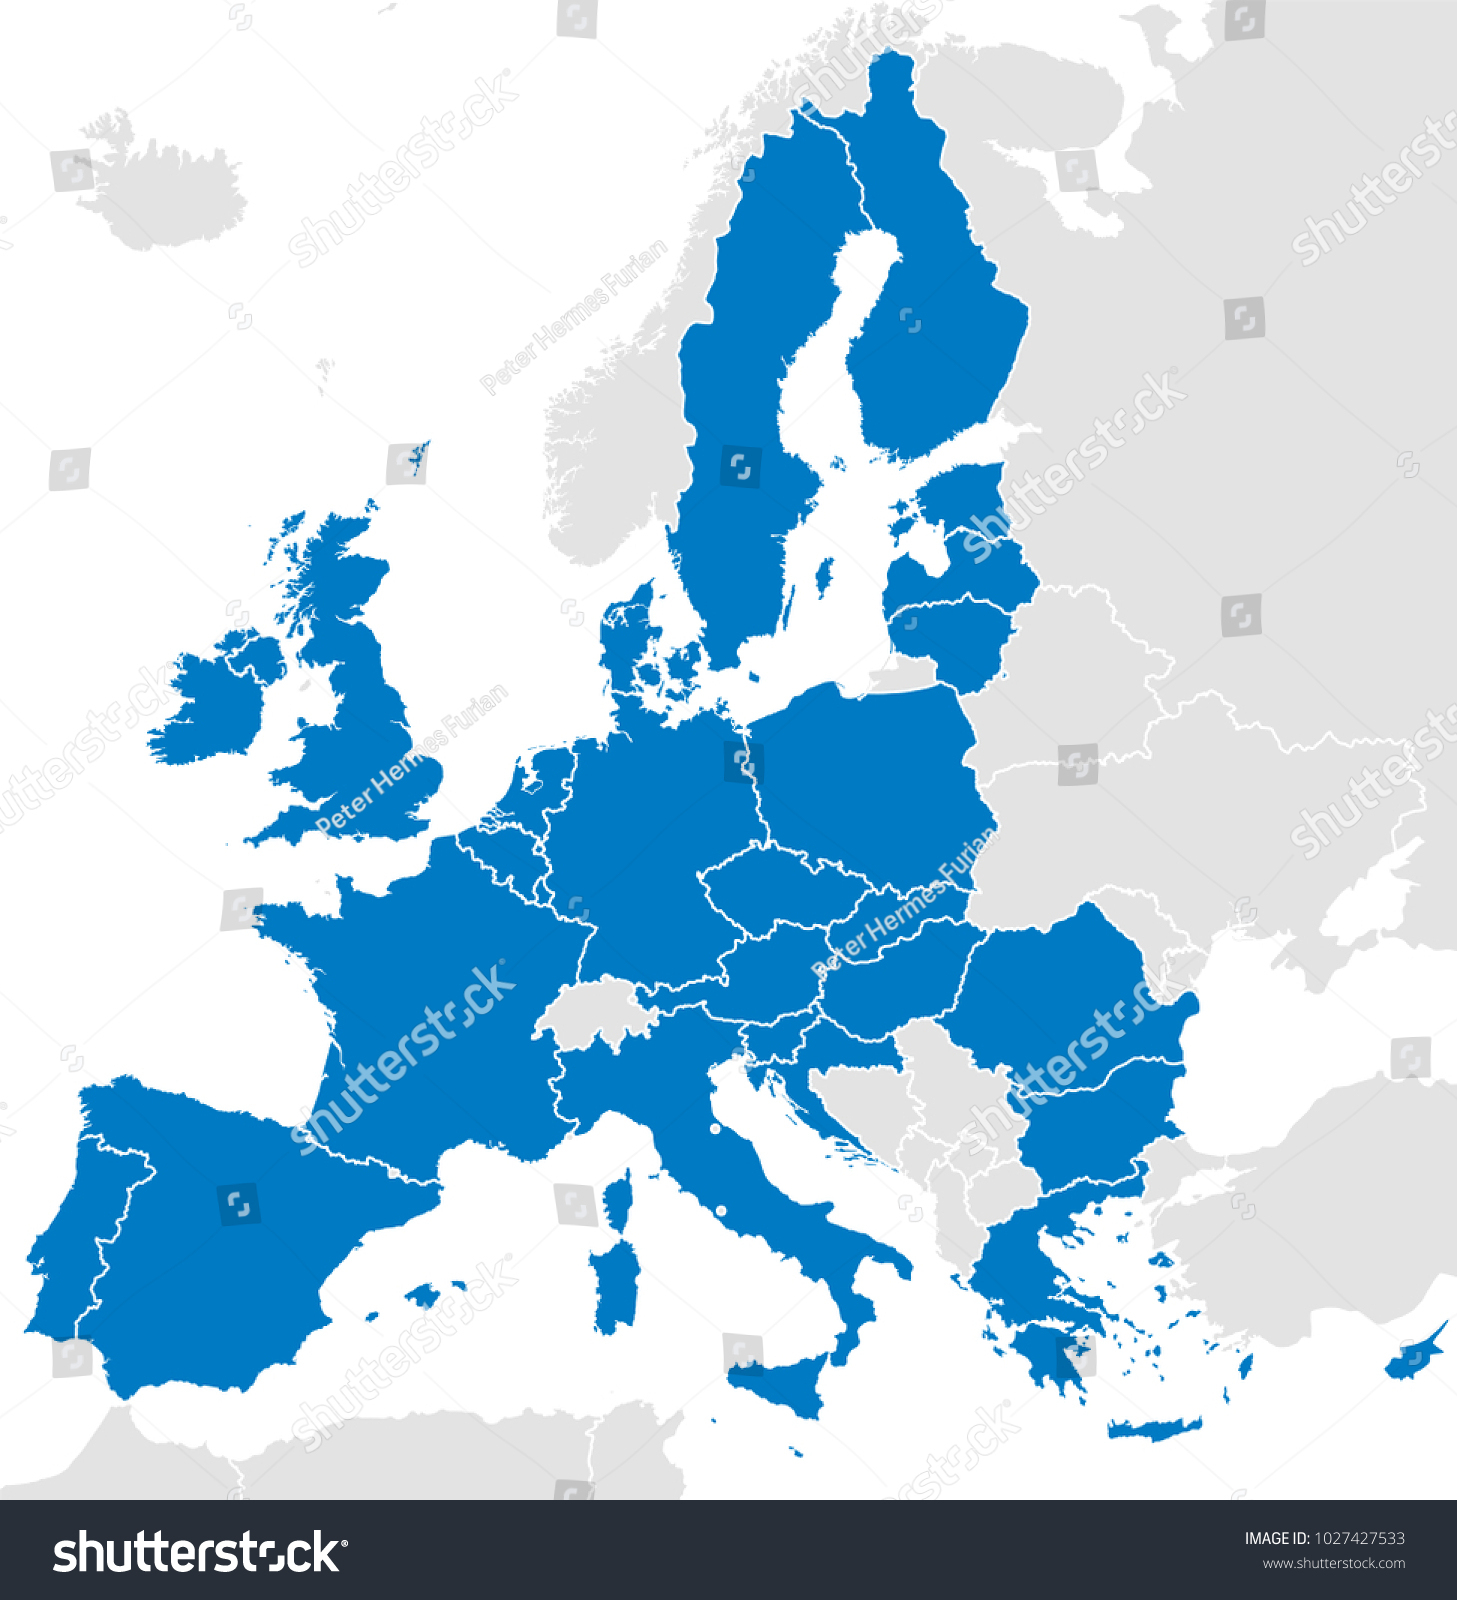 Image Vectorielle De Stock De Les Pays De L&amp;#039;union Européenne intérieur Carte Pays Membre De L Ue 